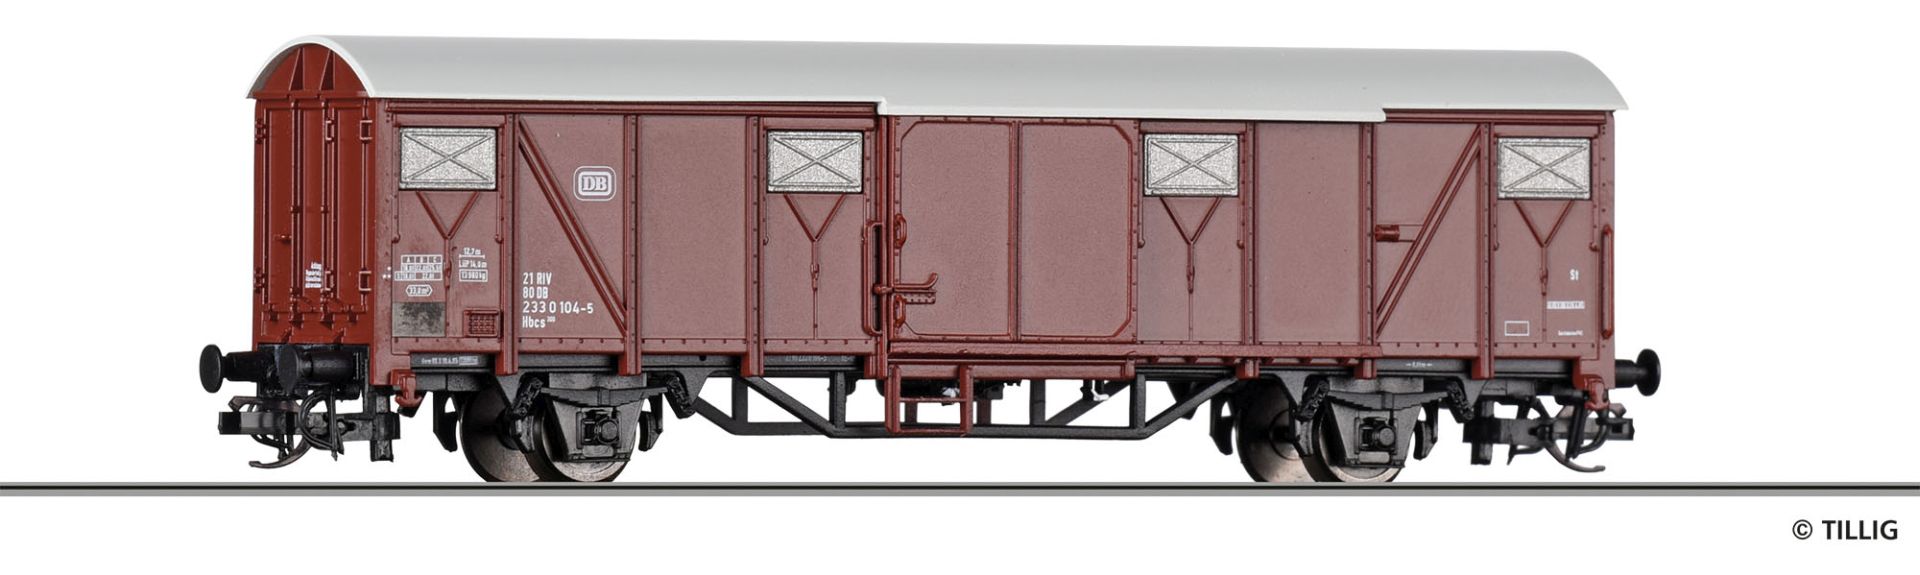 Tillig 17179 - Gedeckter Güterwagen Hbcs 300, DB, Ep.IV